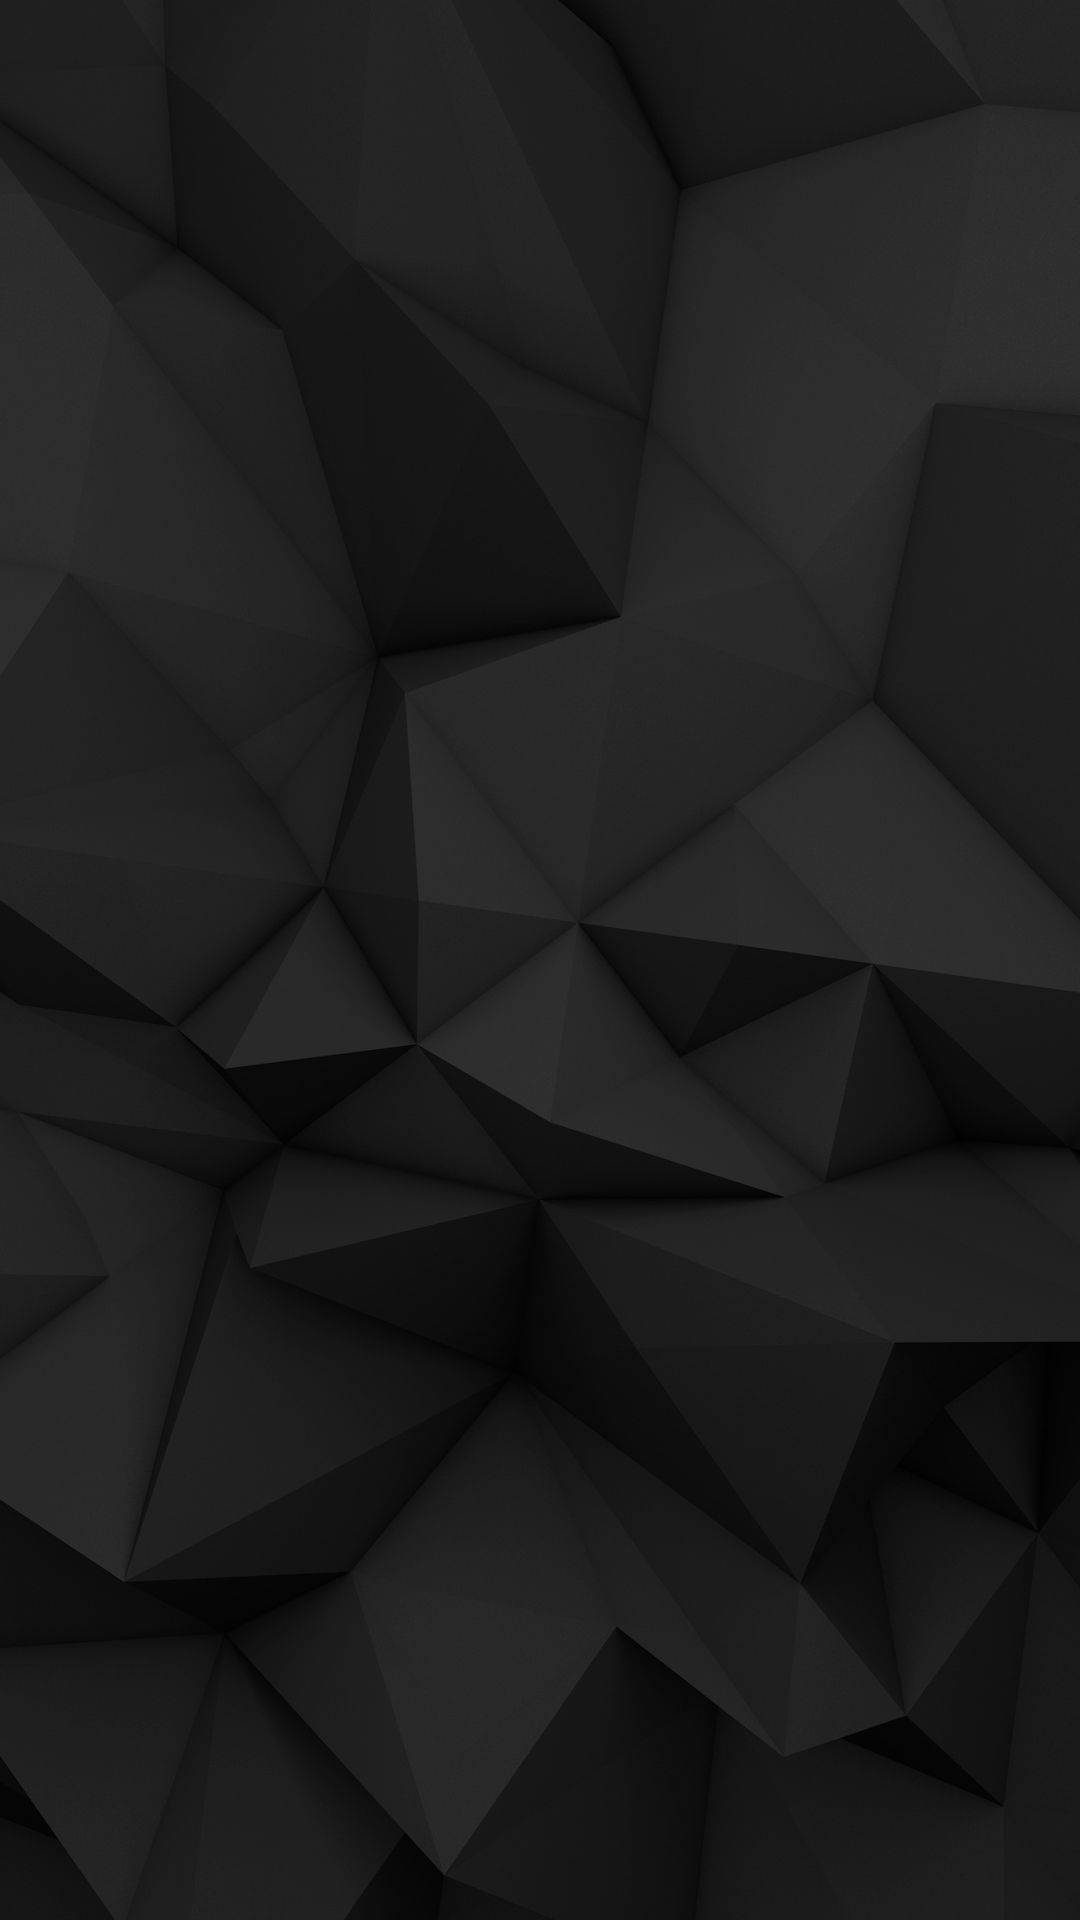 Abstraktegeometrische Solide Schwarze Iphone-hintergrund Wallpaper